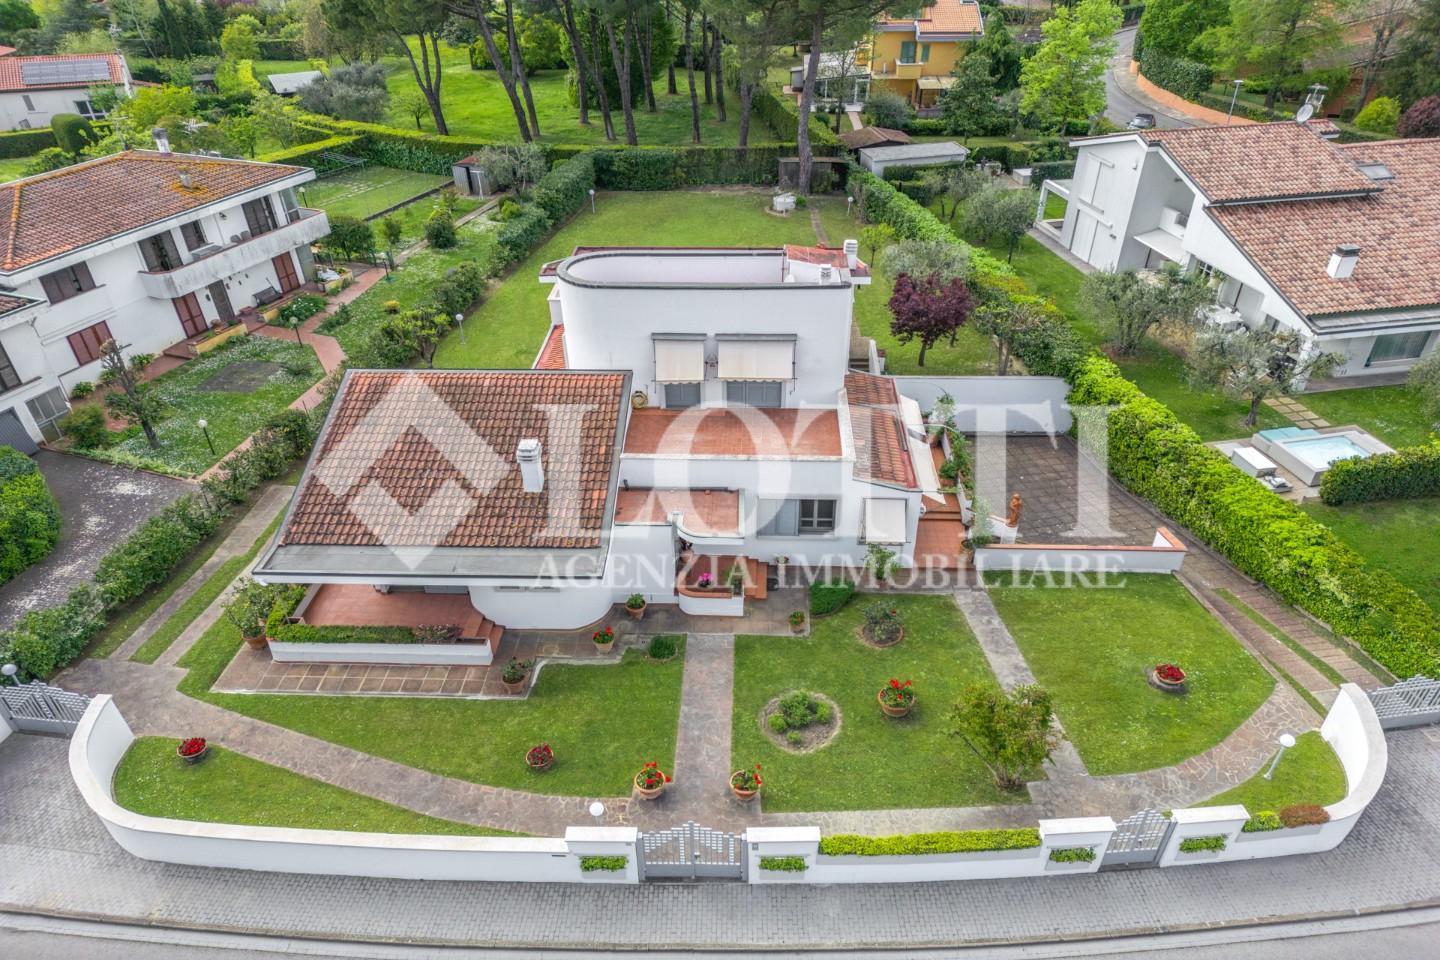 Villa for sale in Pontedera (PI)